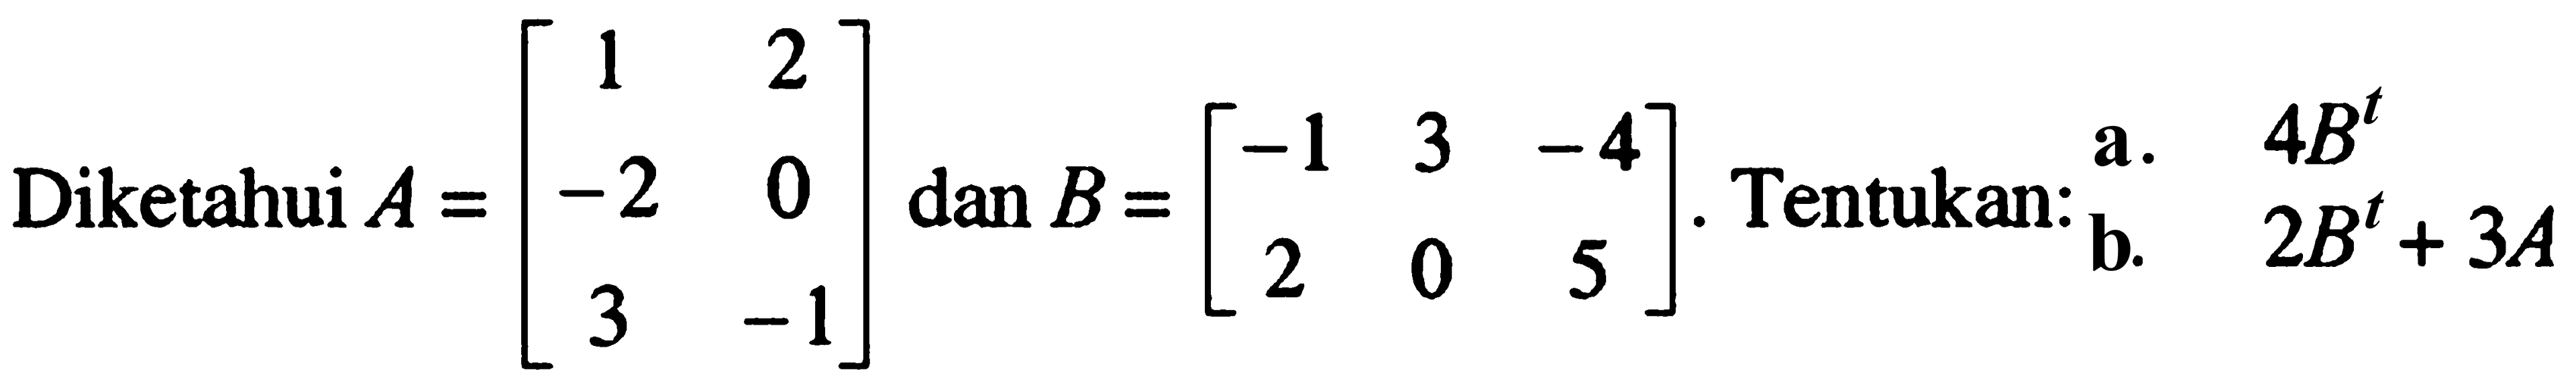 Diketahui A=[1 2 -2 0 3 -1] dan B=[-1 3 -4 2 0 5]. Tentukan: a. 4B^t b. 2B^t+3A